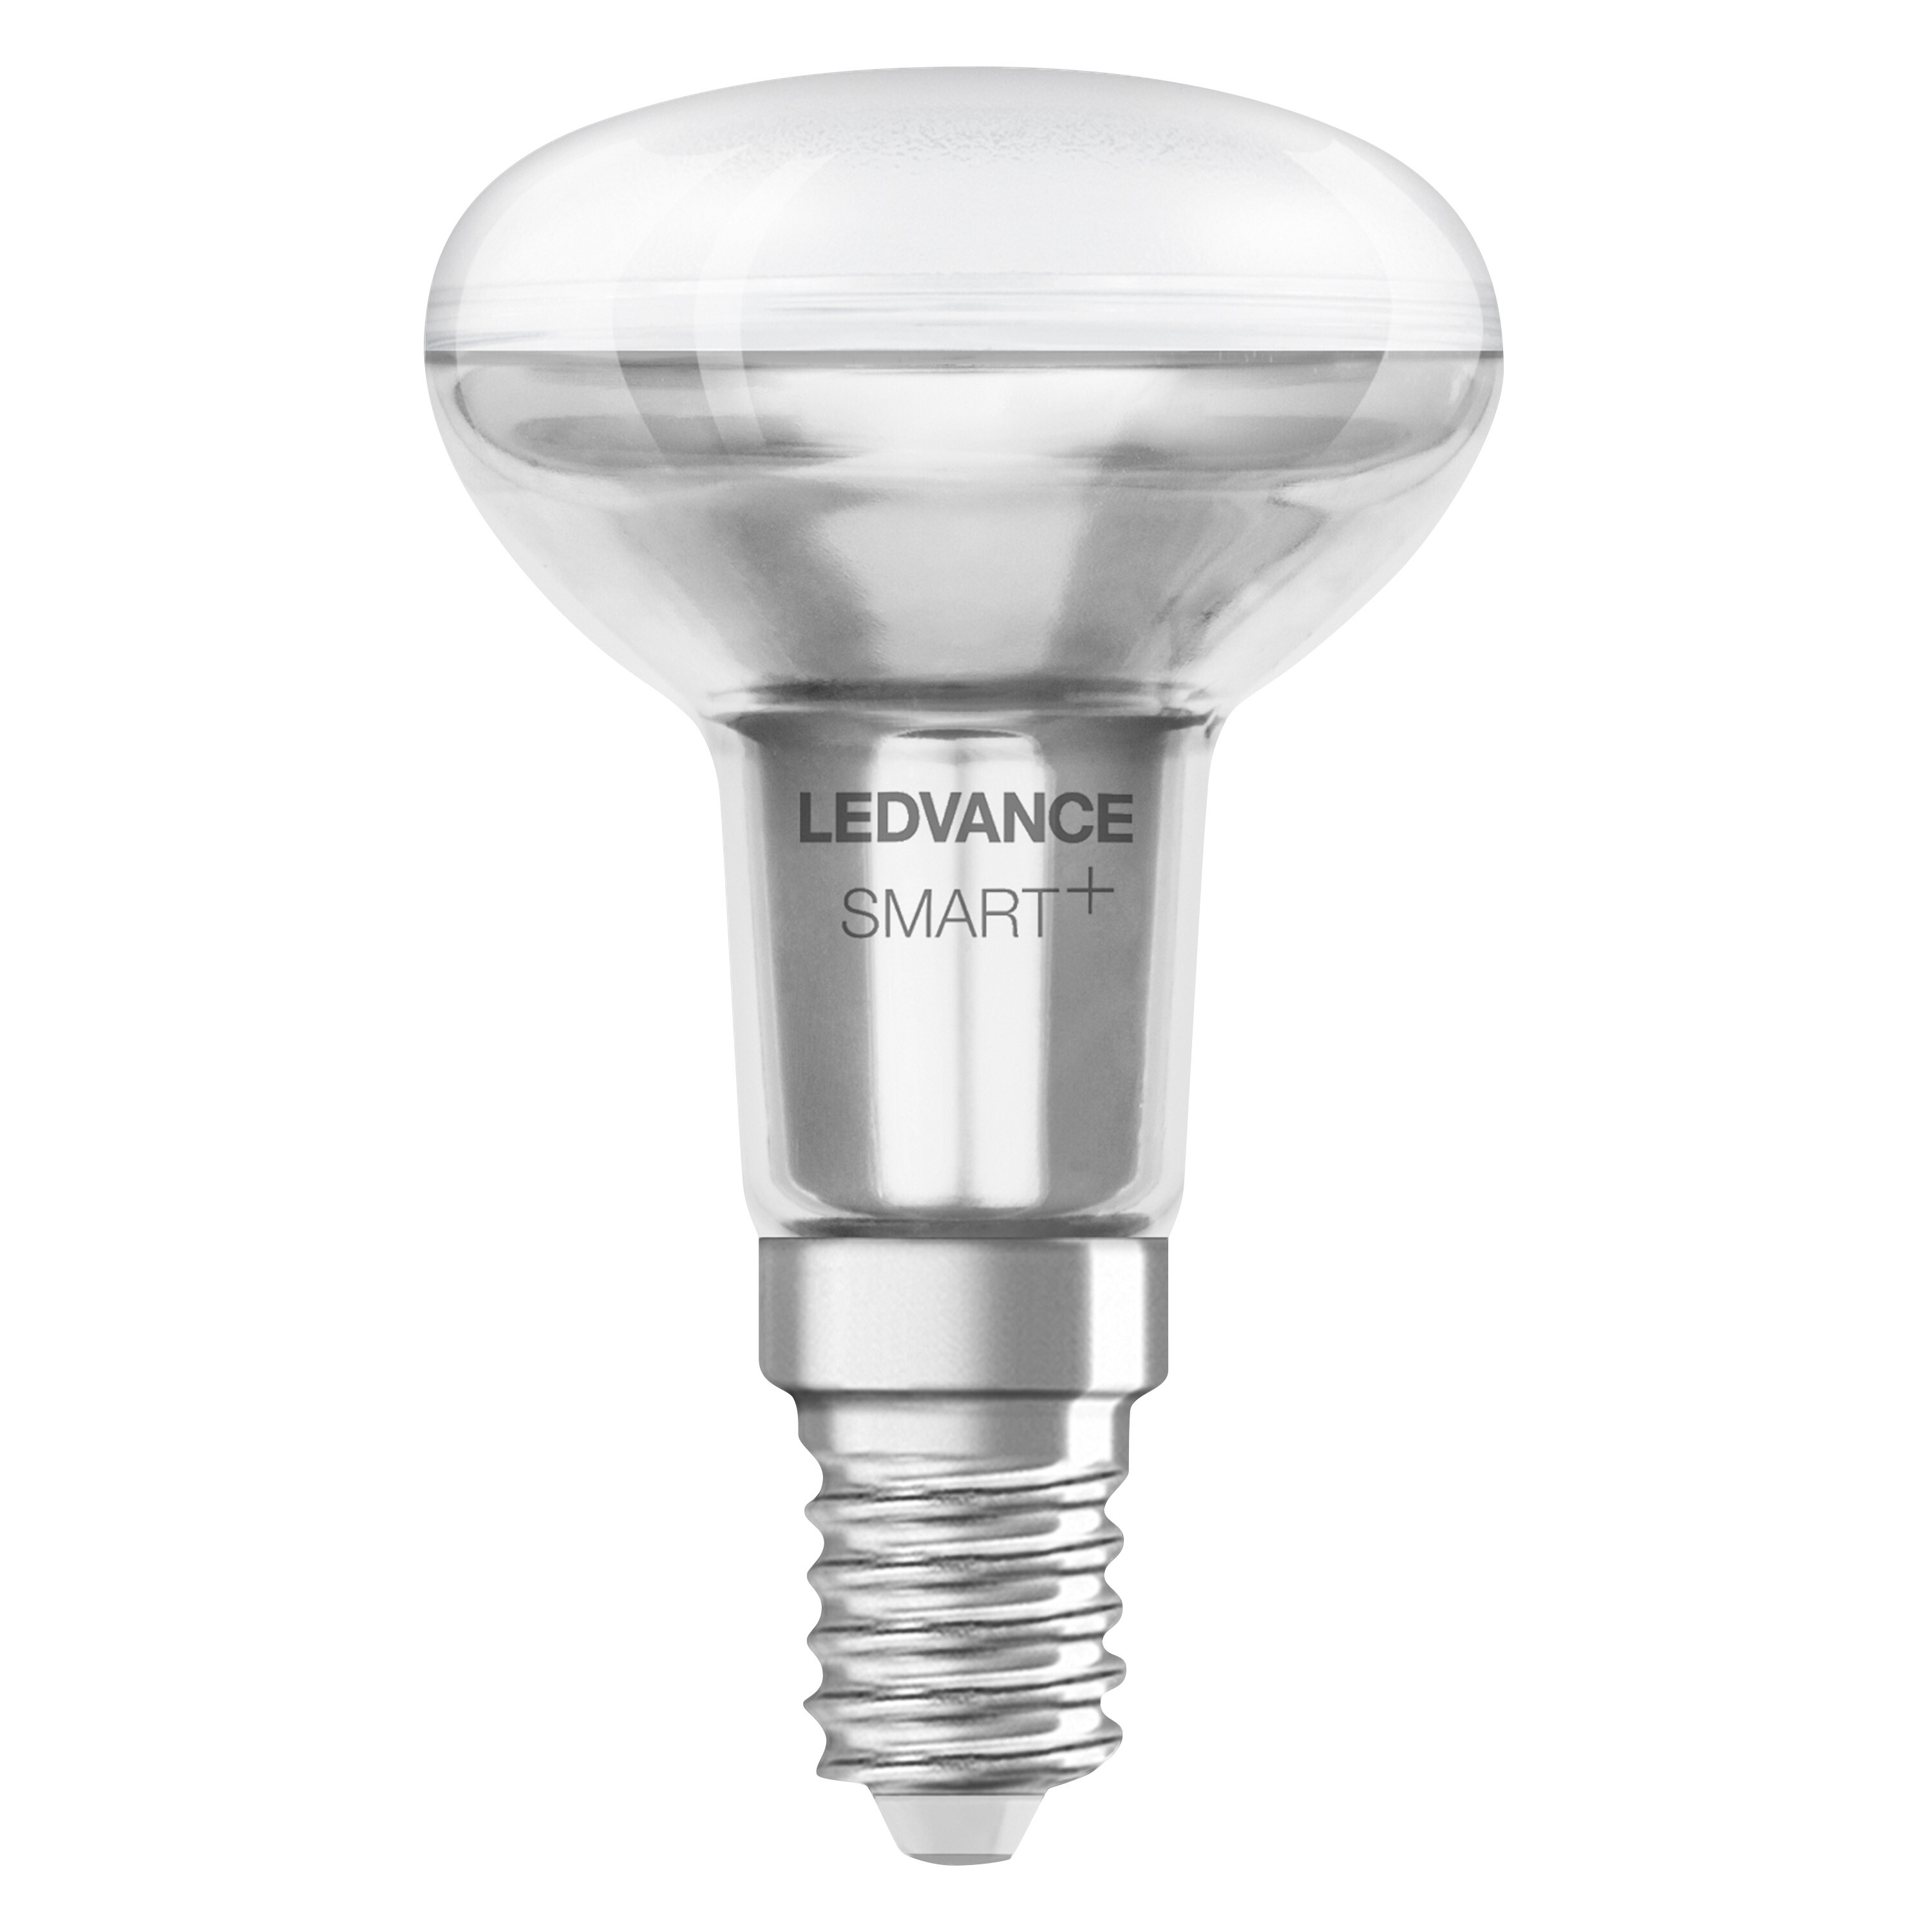 LEDVANCE SMART+ SPOT CONCENTRA Multicolor Lampe 3W R50 40 änderbar E14 LED Multicolor Lichtfarbe